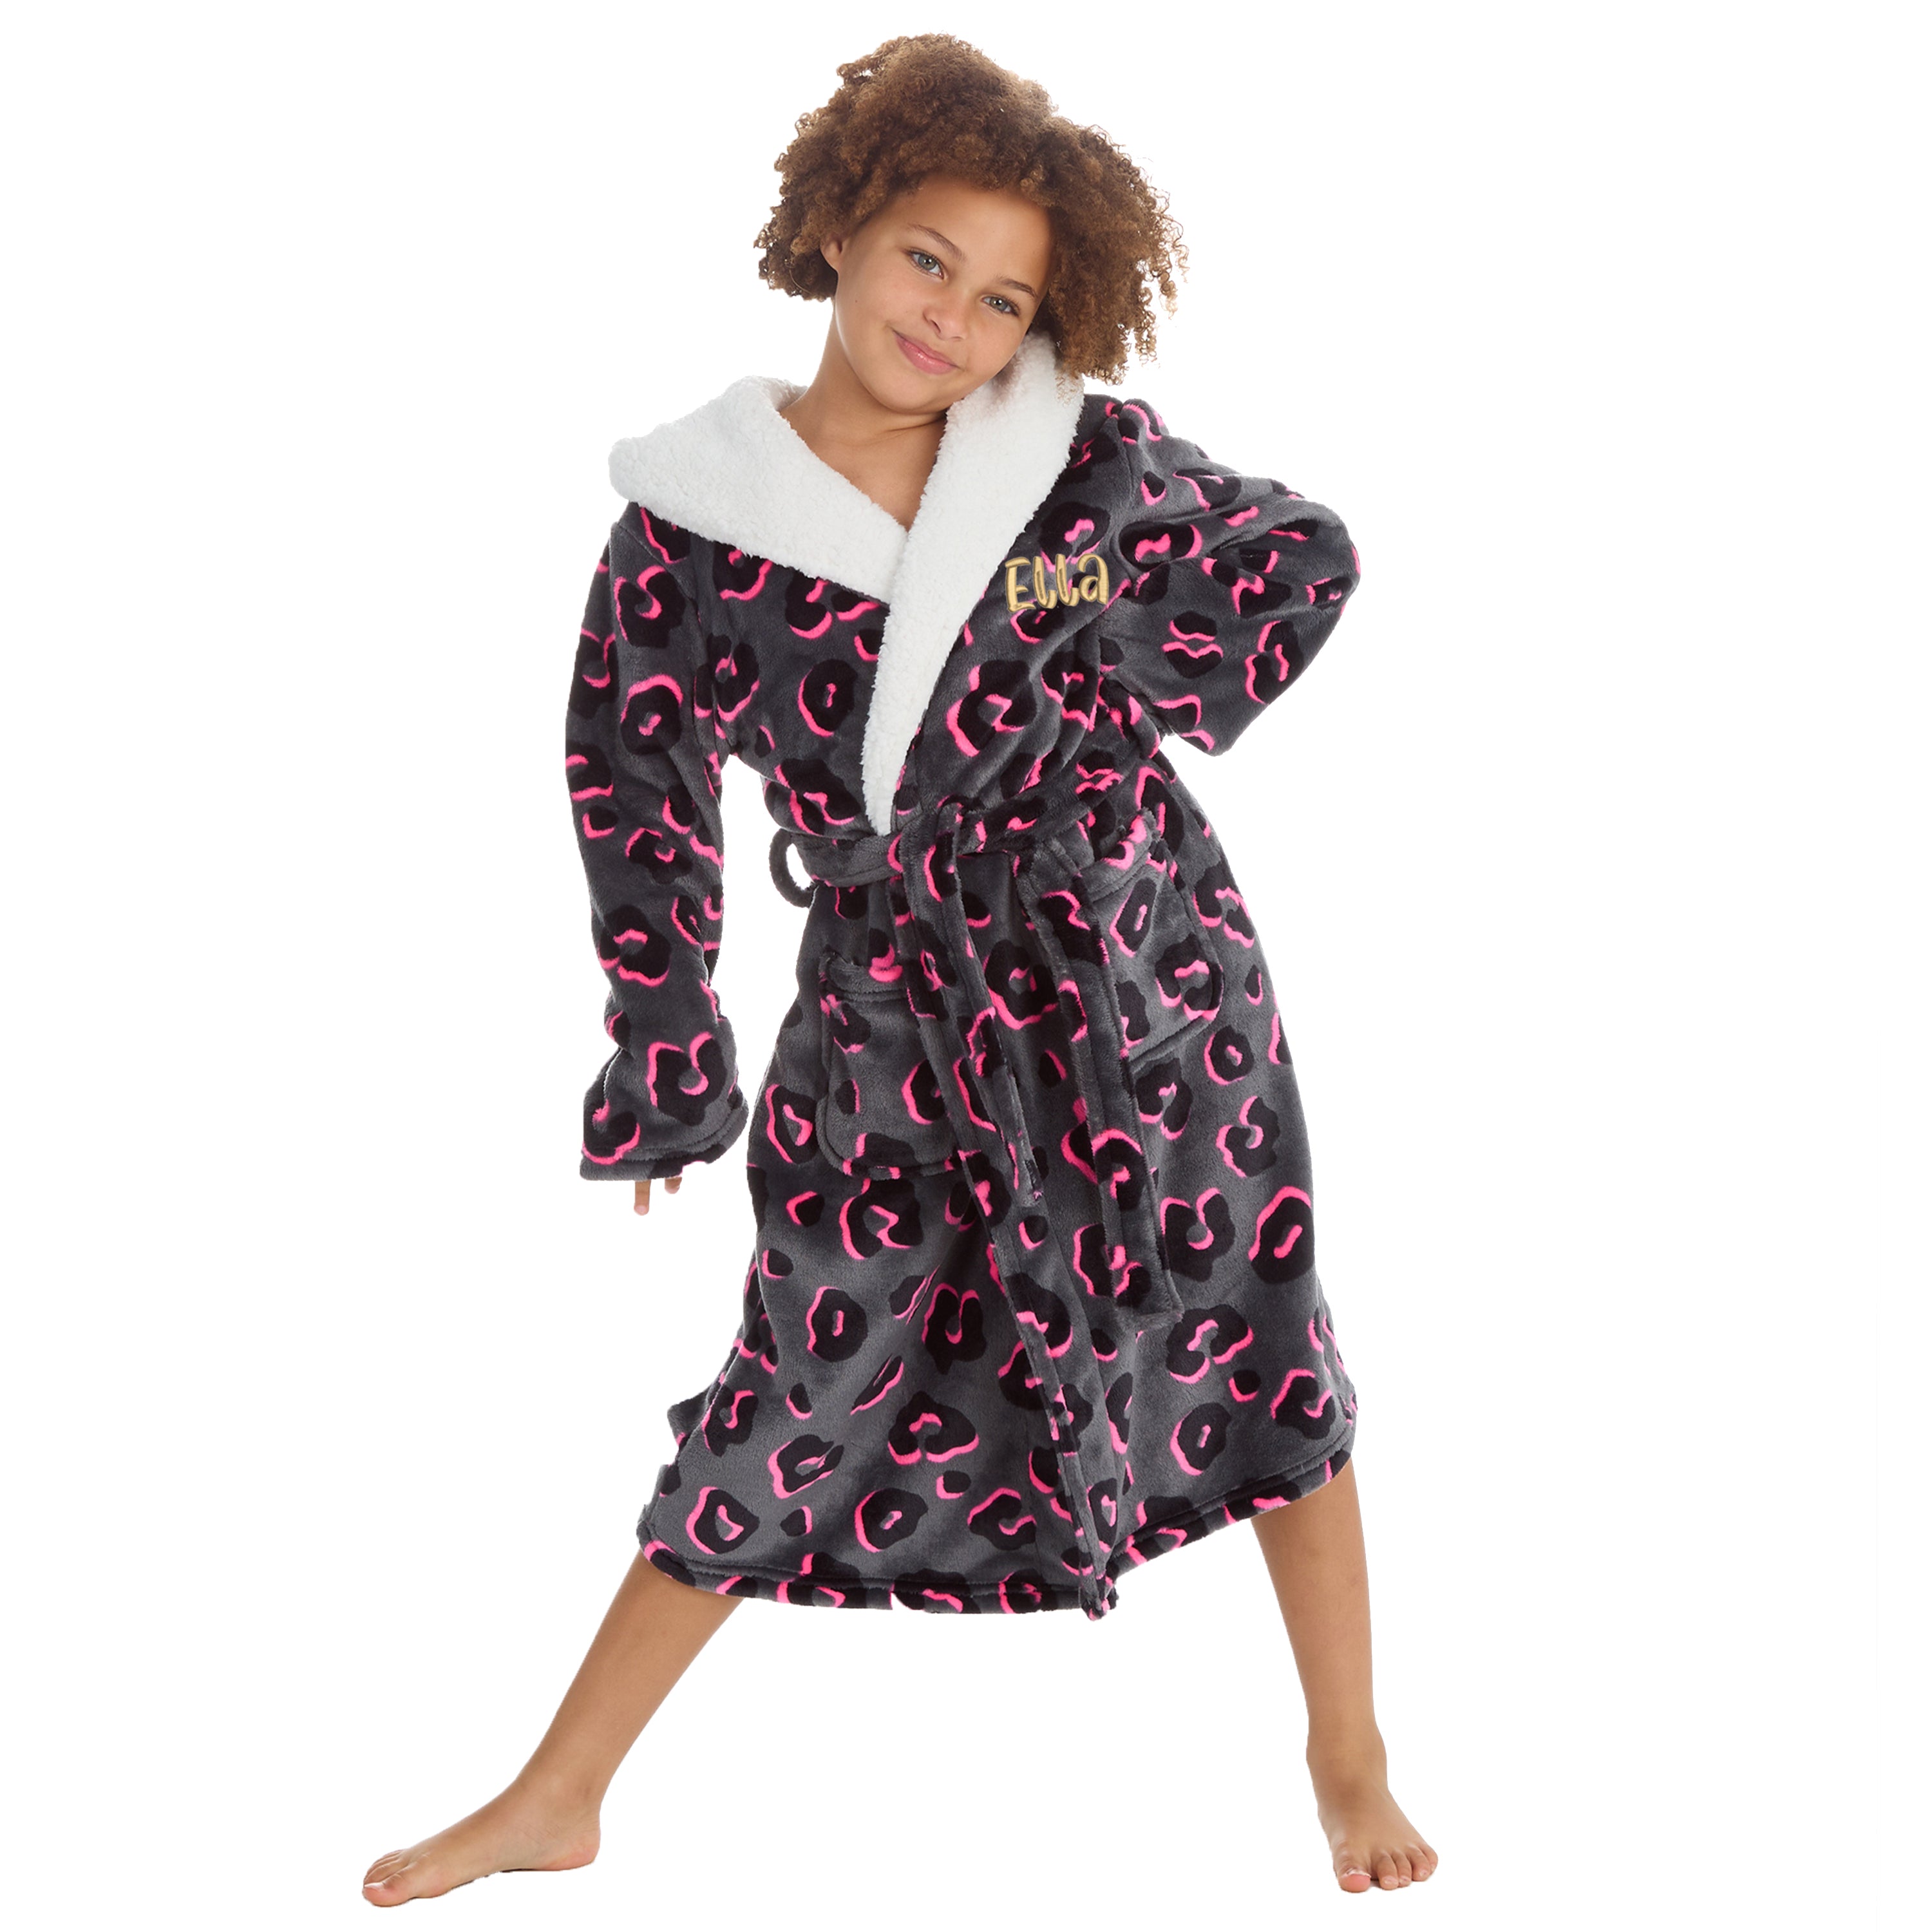 Steve Madden Leopard Soft Fleece Dressing Gown Robe Fluffy Lounge Wear  Nightwear | eBay